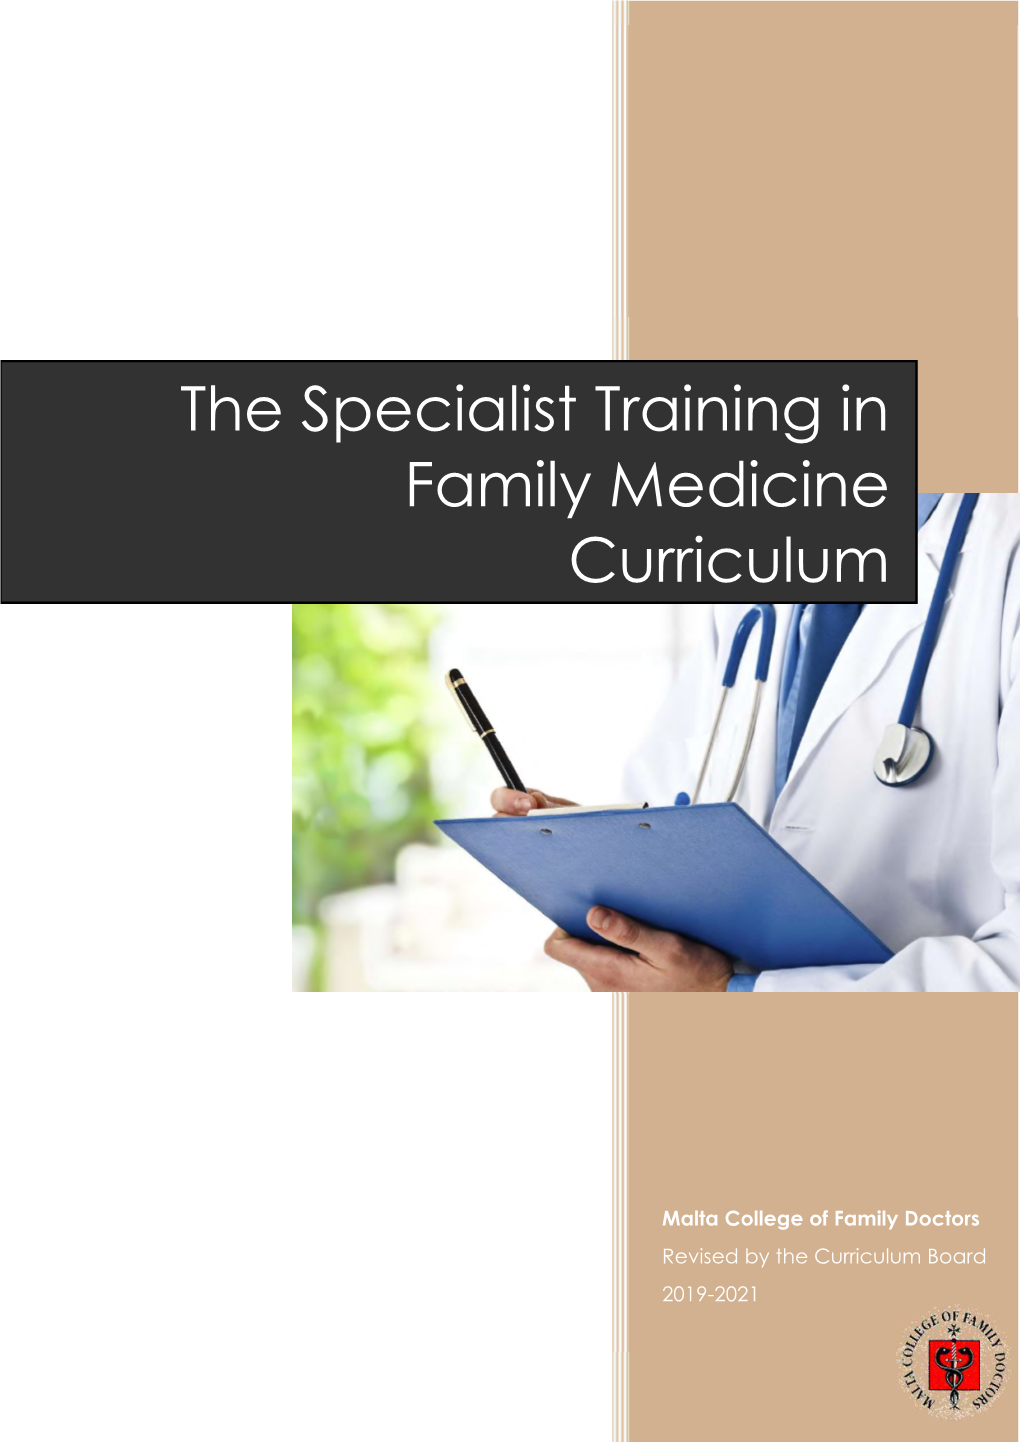 The Specialist Training in Family Medicine Curriculum